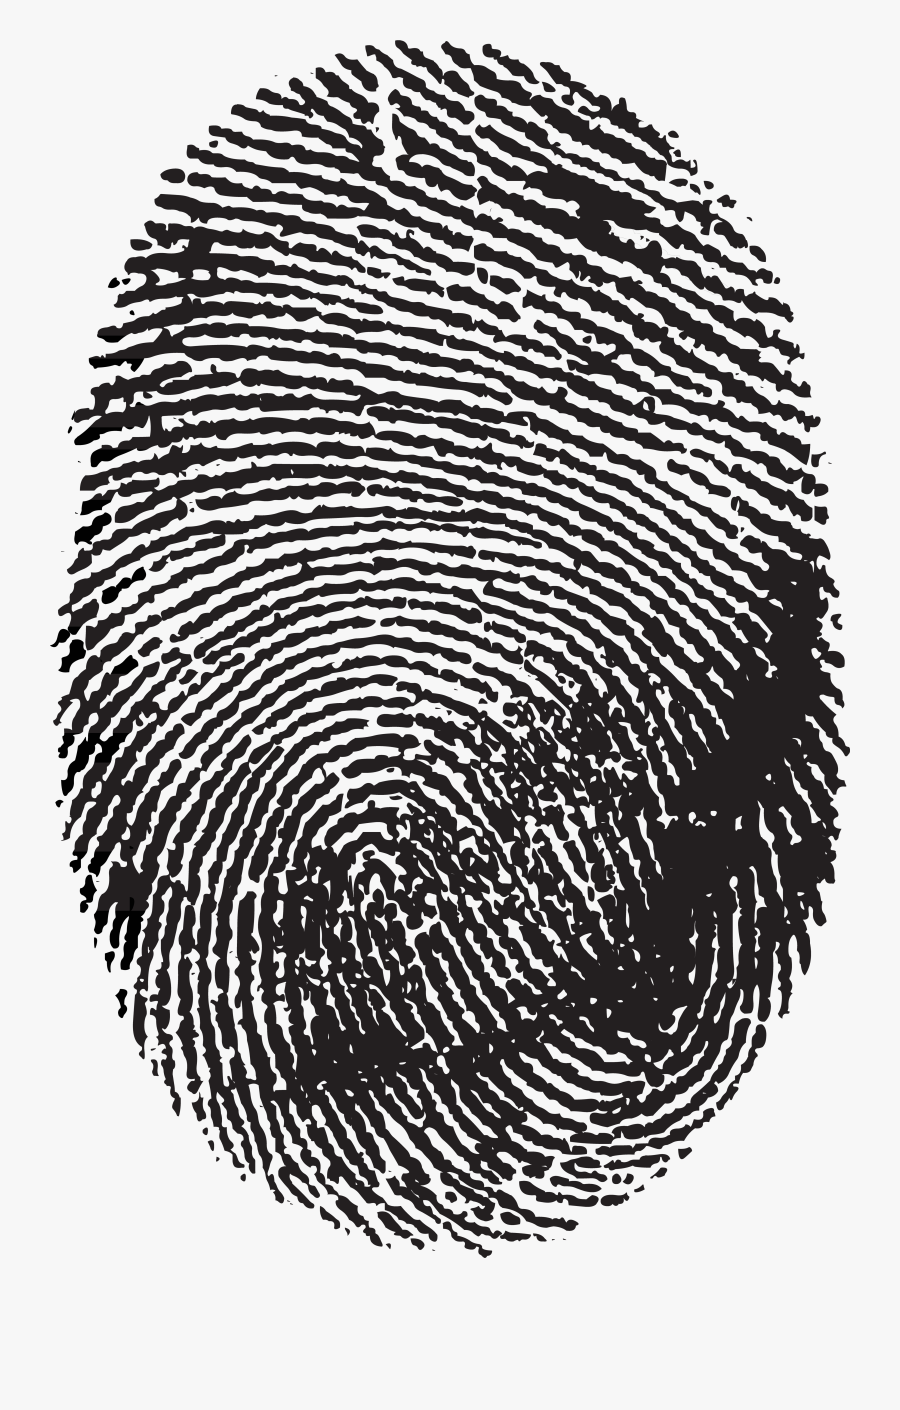 Fingerprint Image Scanner Clip Art - Transparent Background Finger Print Png, Transparent Clipart